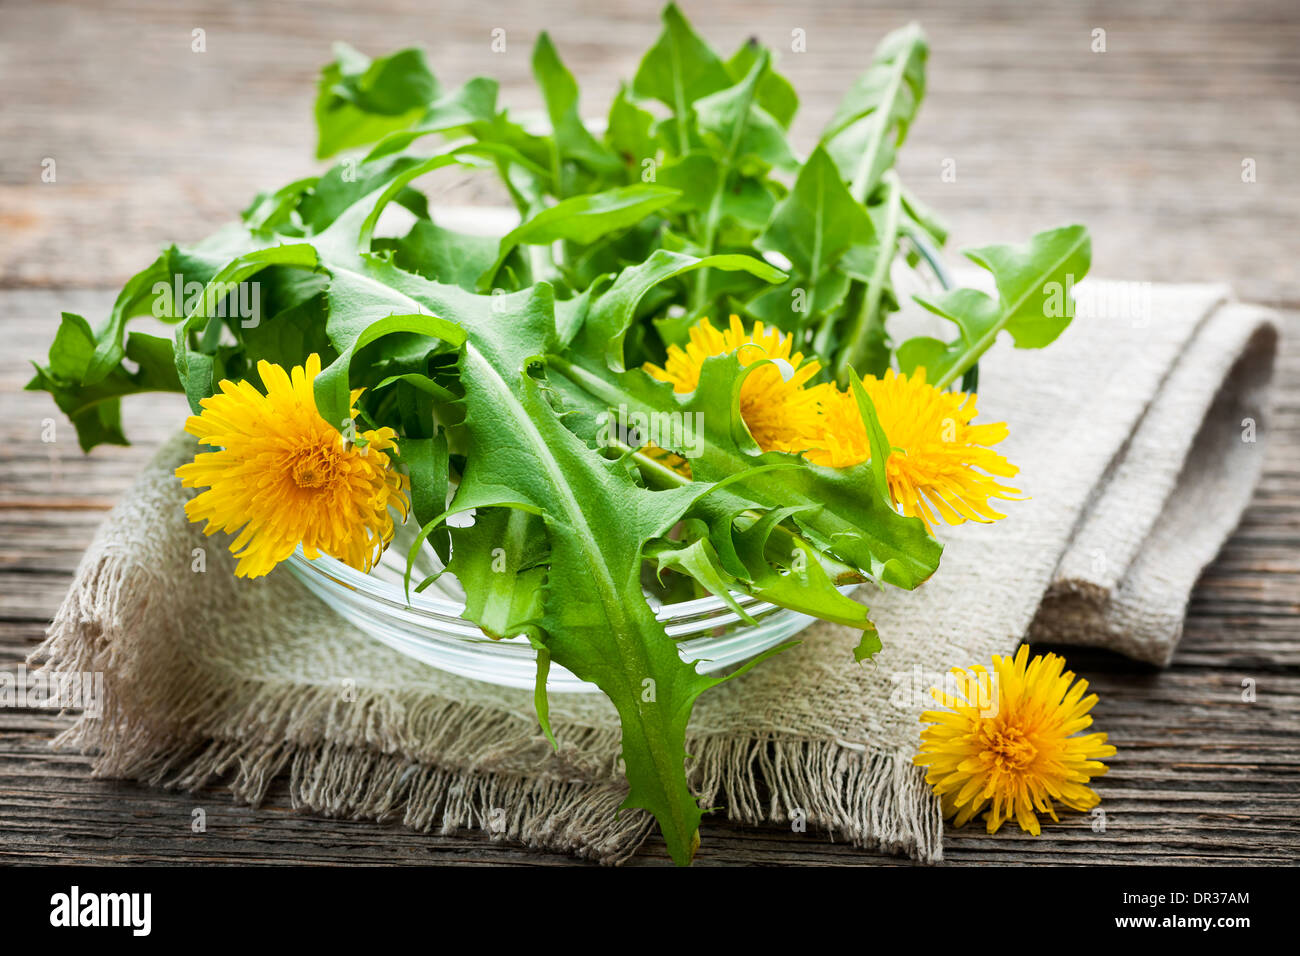 Foraged commestibili fiori di tarassaco e verdi in vaso Foto Stock